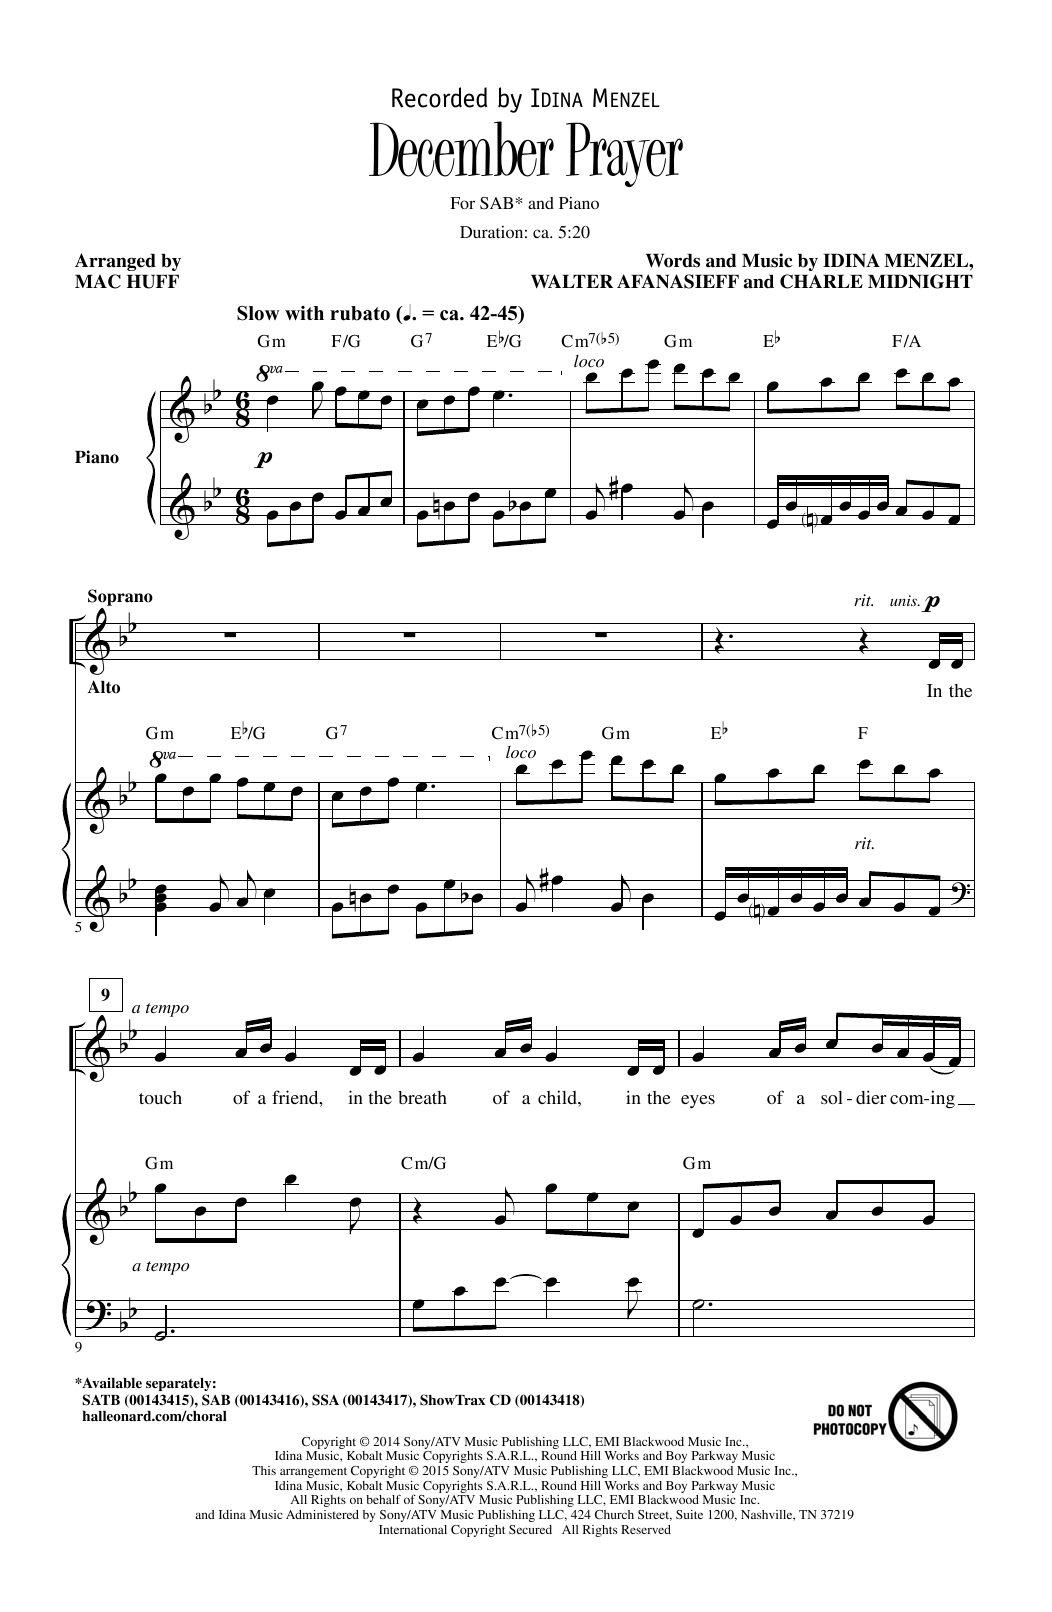 Idina Menzel December Prayer (arr. Mac Huff) sheet music notes and chords arranged for SAB Choir